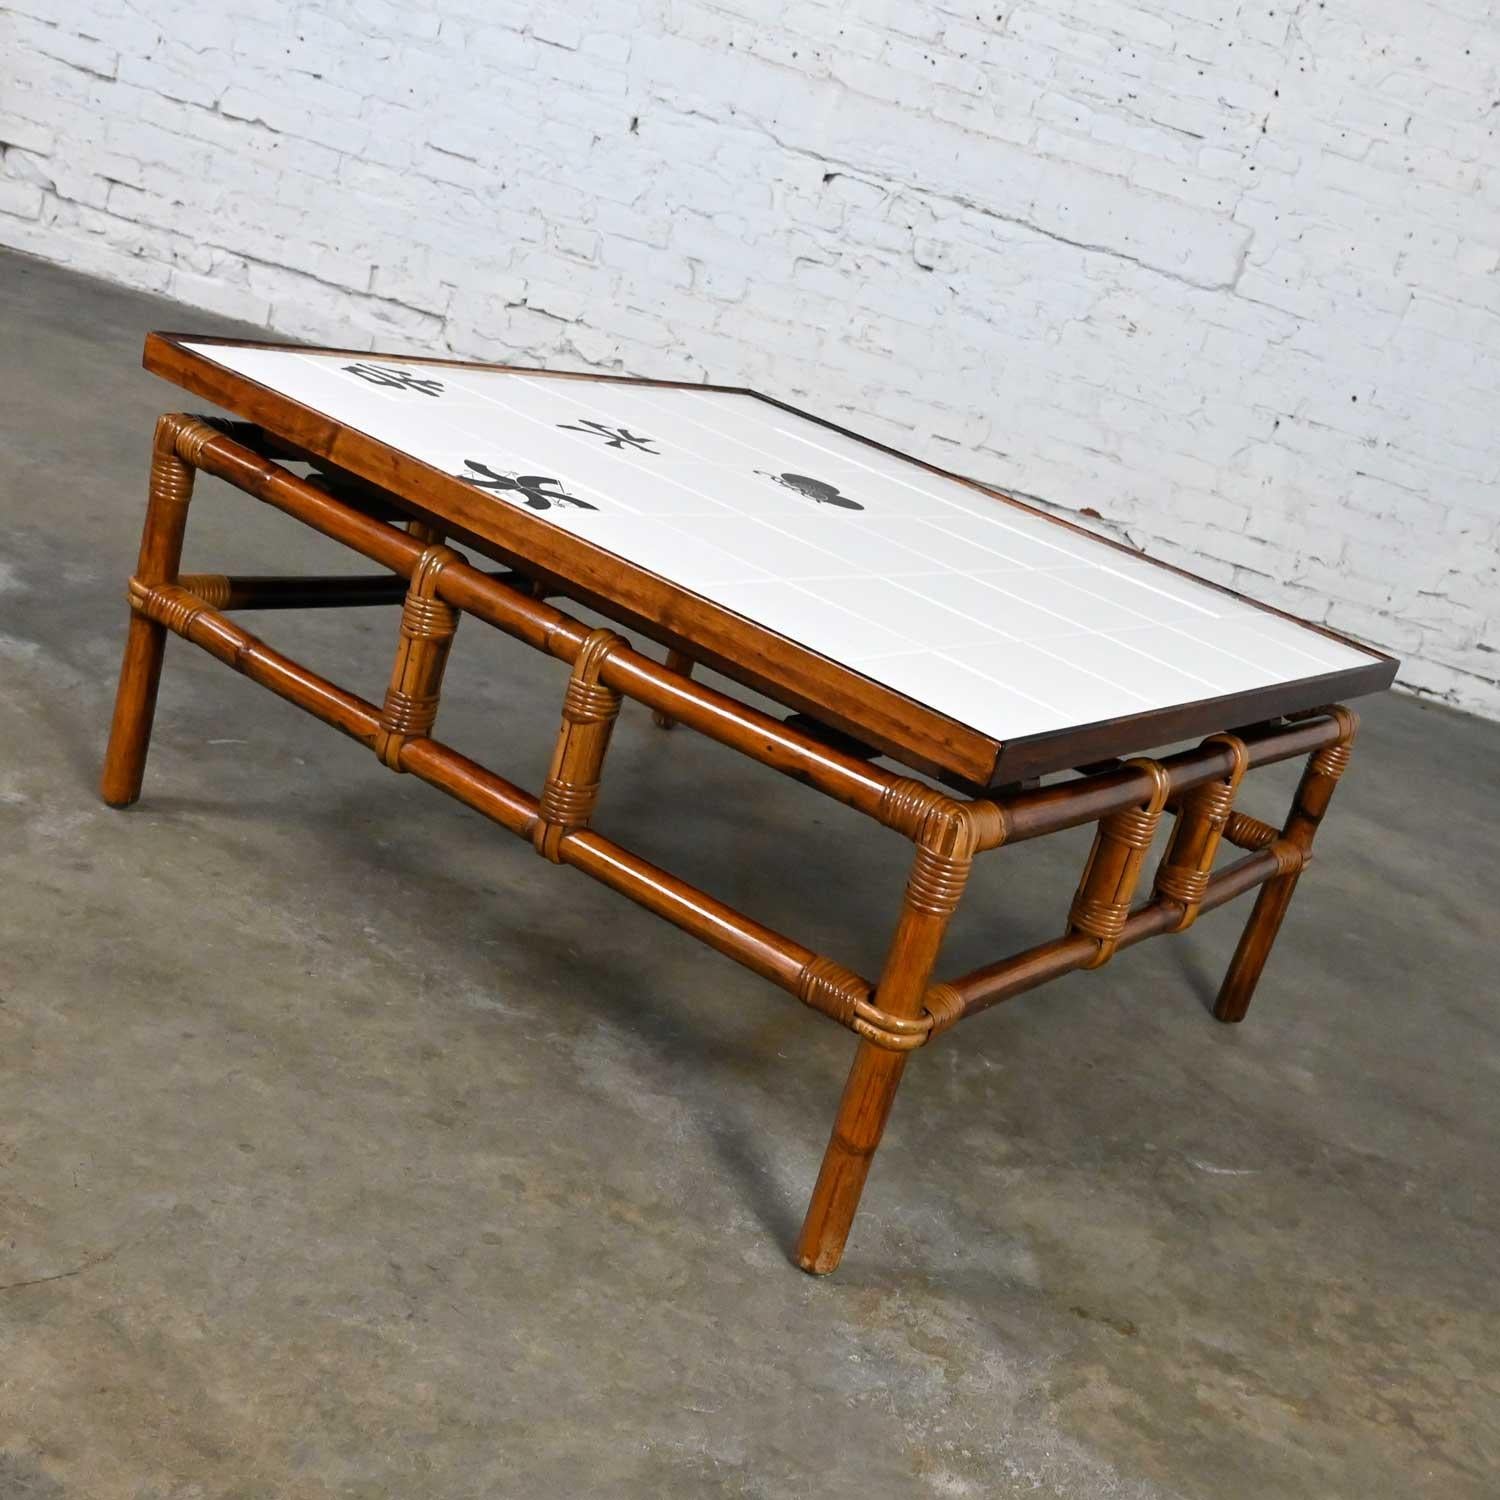 Fabuleuse table basse vintage en rotin de style campagne de la collection Ficks Reed Far Horizons, avec un dessus en carreaux conçu par John Wisner. Bel état, en gardant à l'esprit qu'il s'agit d'un produit vintage et non neuf, qui présente donc des